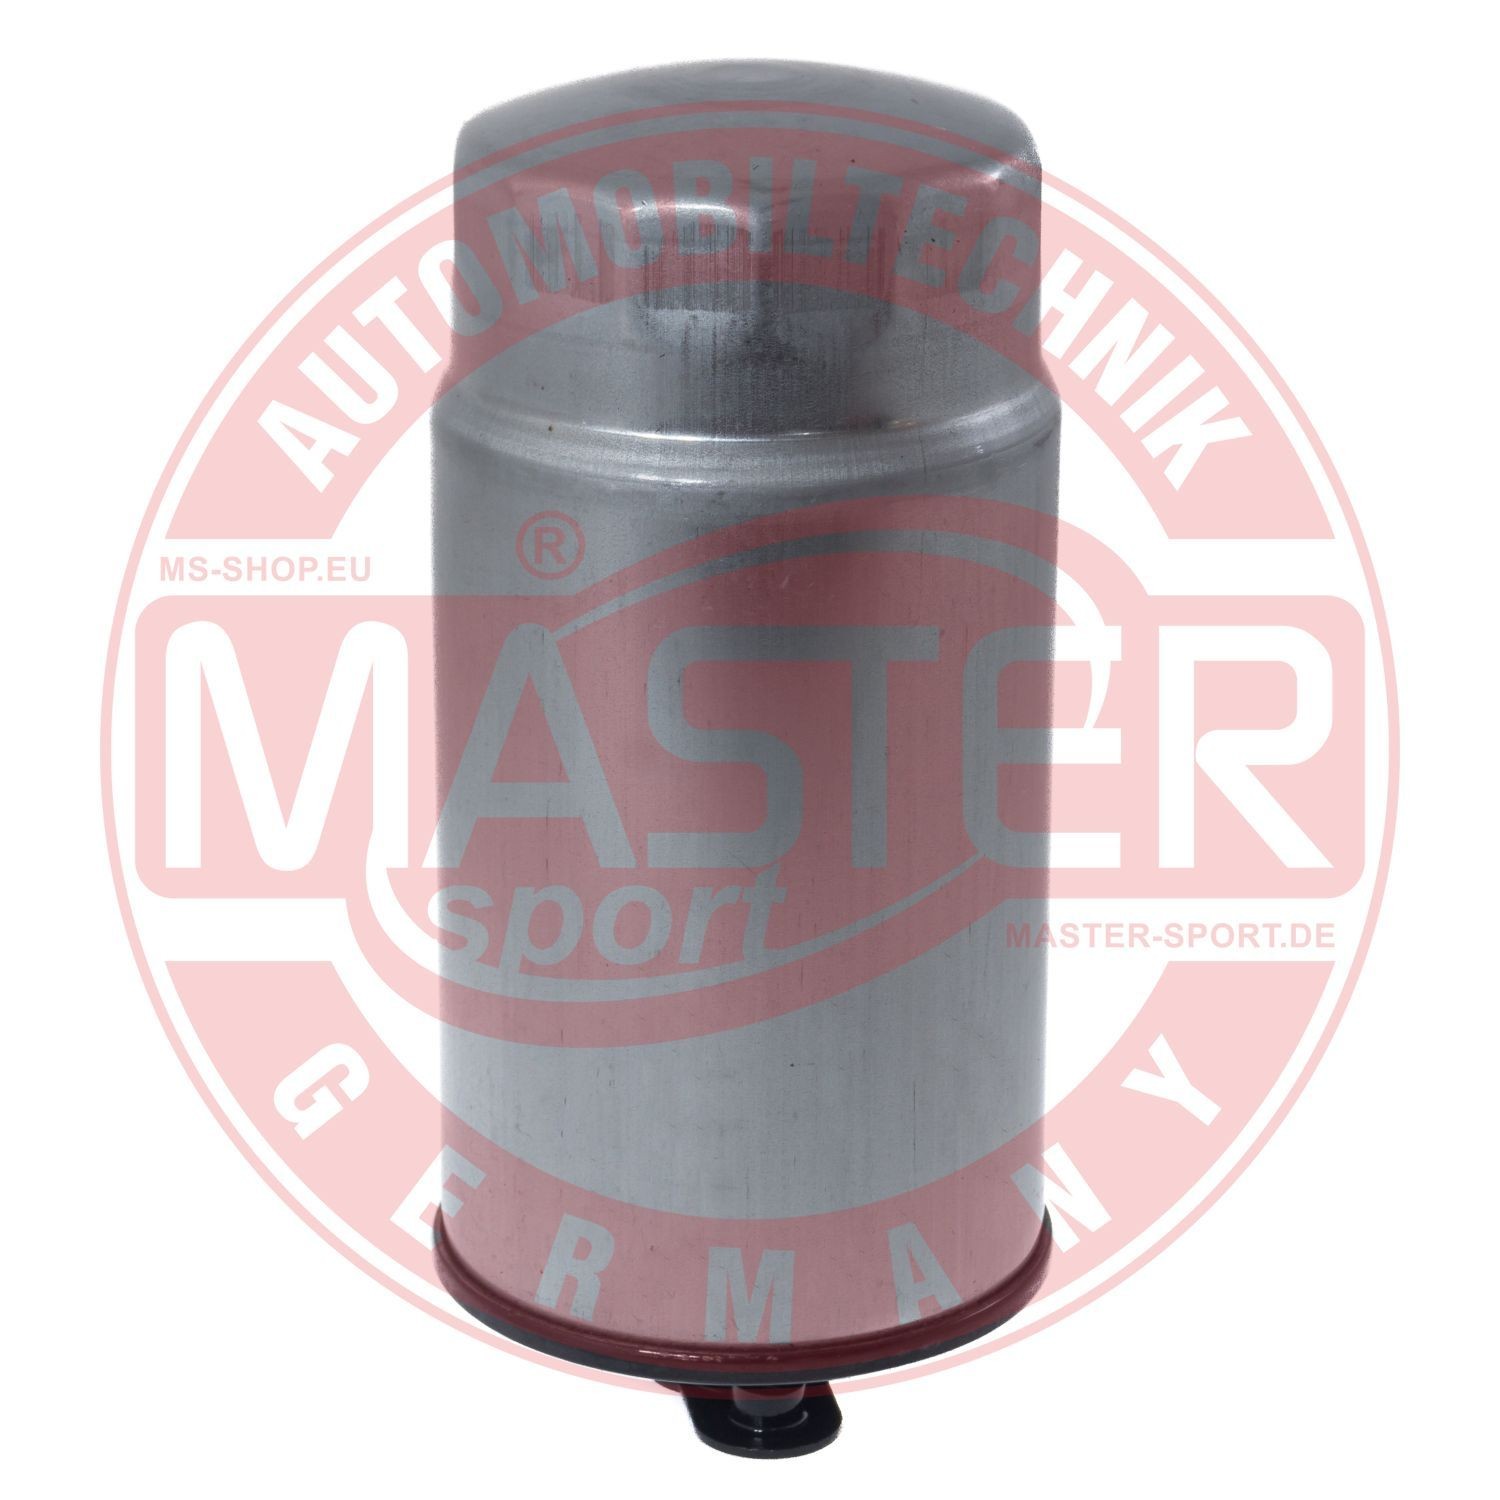 430084110 MASTER-SPORT 841/1-KF-PCS-MS Fuel filter 1332 7 787 825